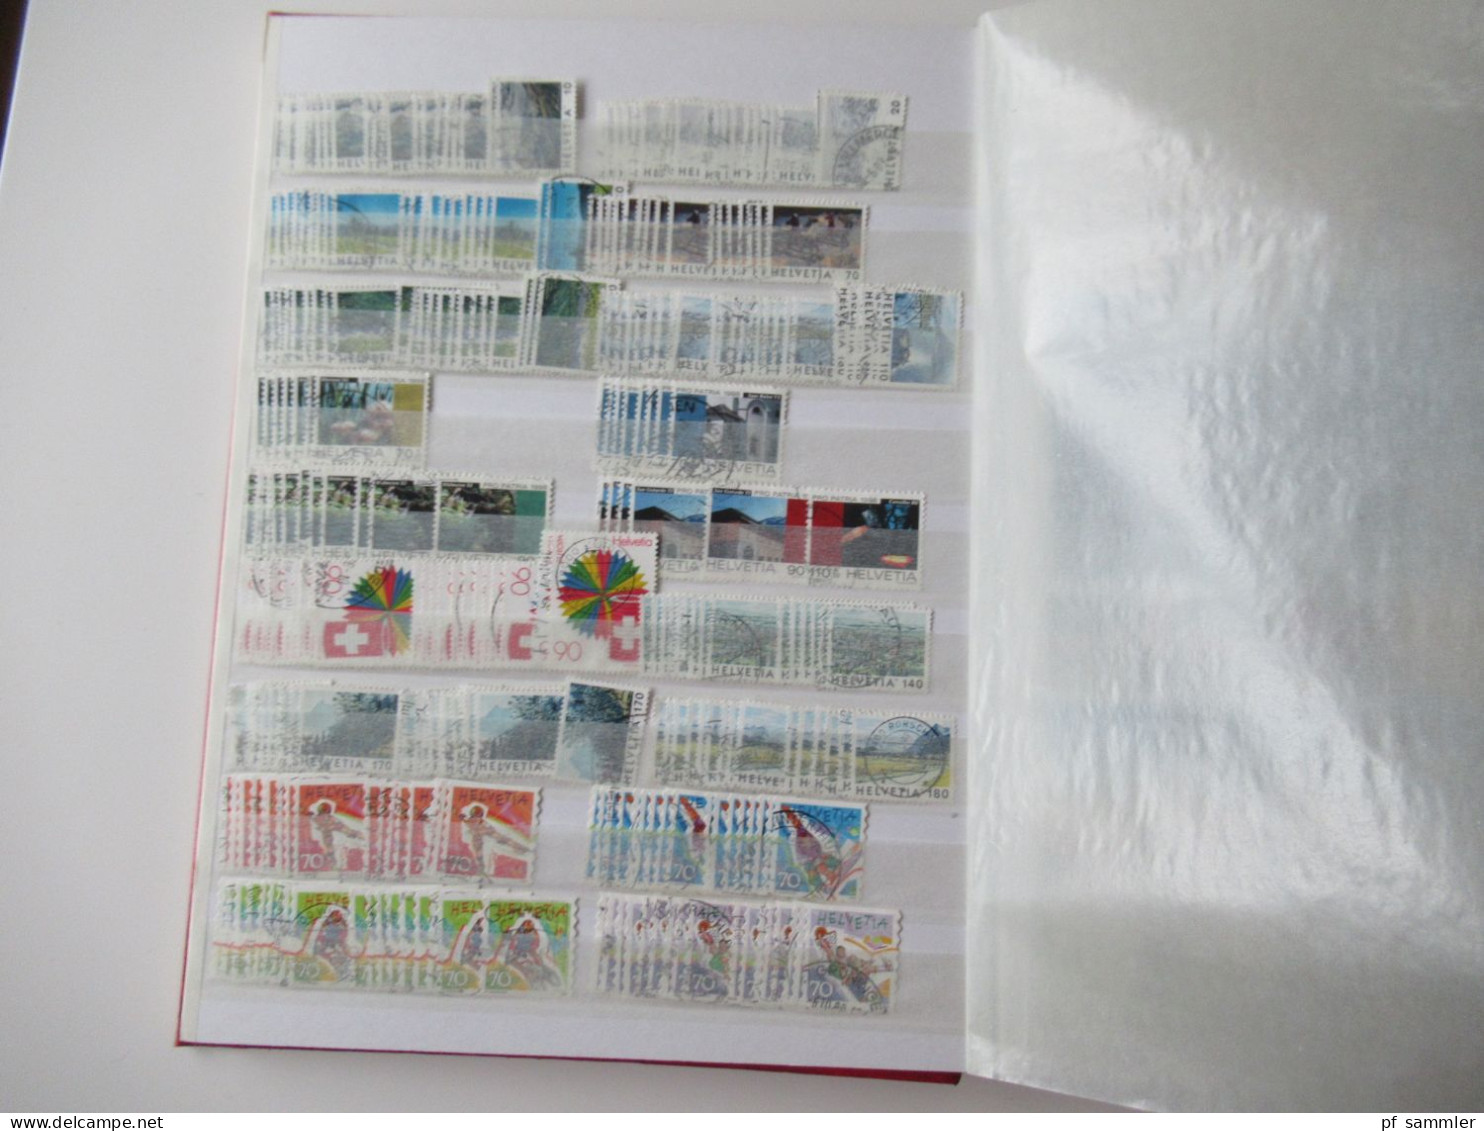 Sammlung / interessantes Album / Lagerbuch Europa Schweiz 1995 - 2011 tausende gestempelte Marken  / Fundgrube!